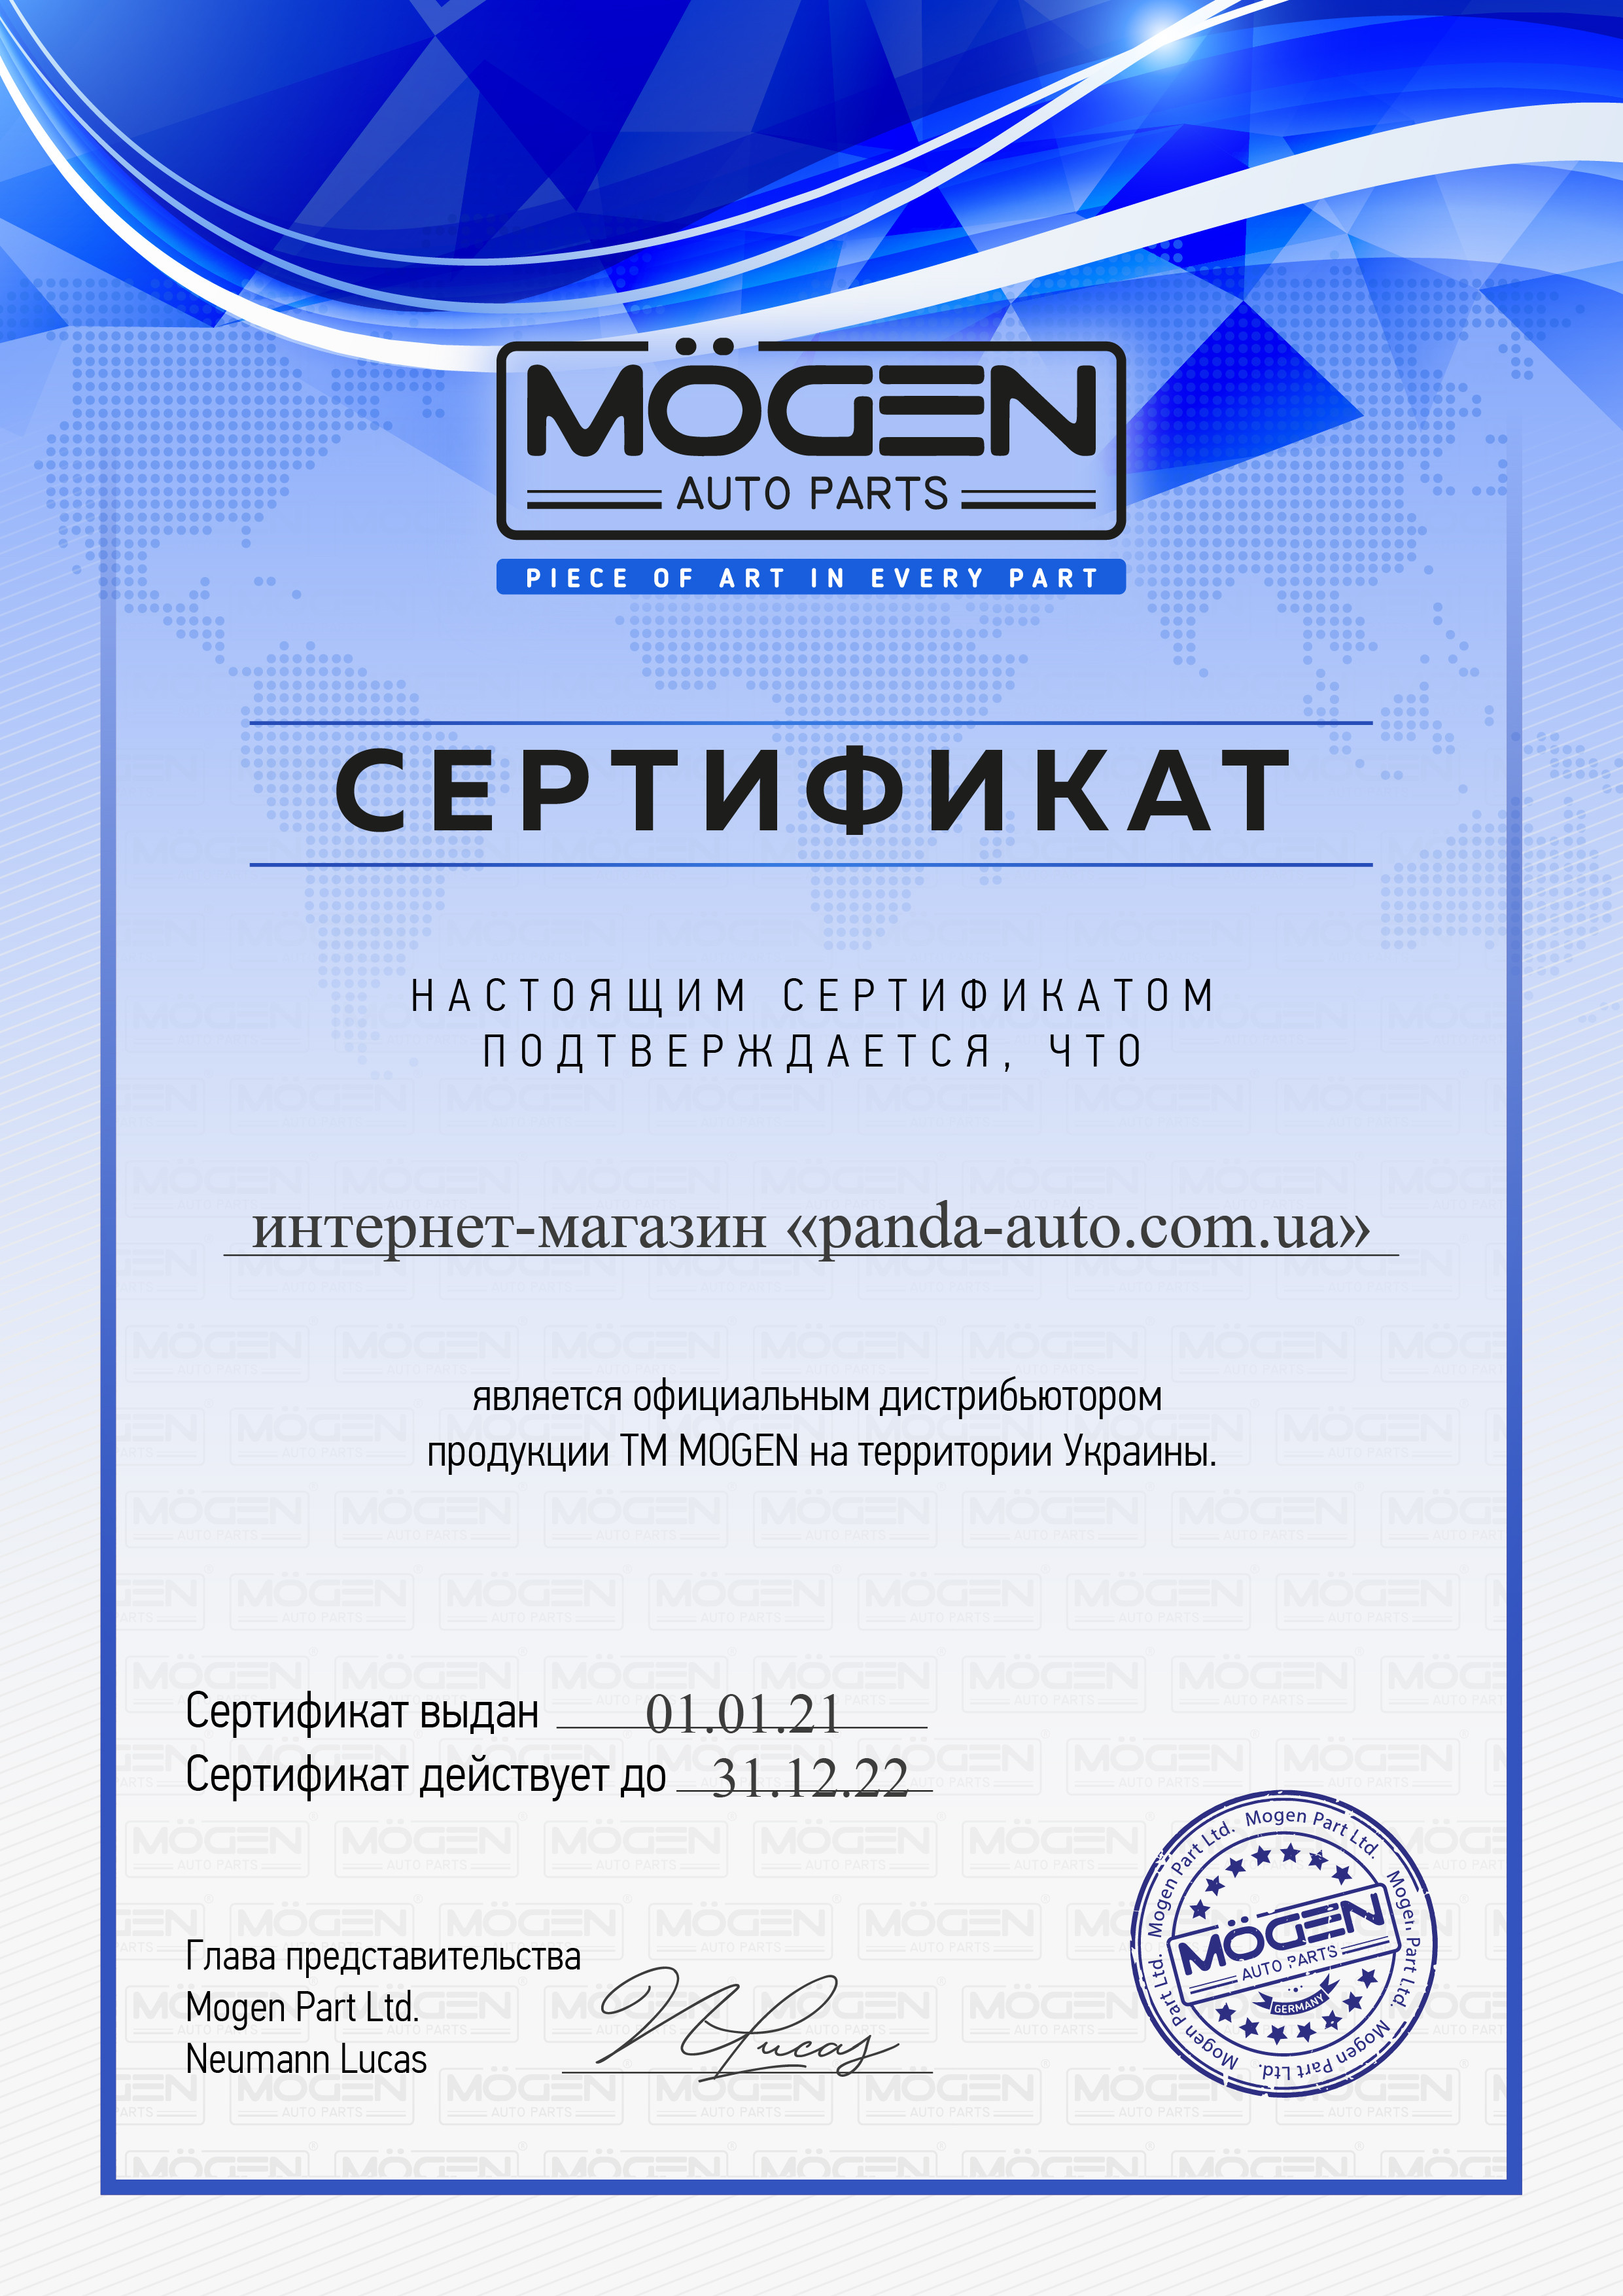 Panda-Auto офіційний дистриб'ютор ТМ Mogen в Україні